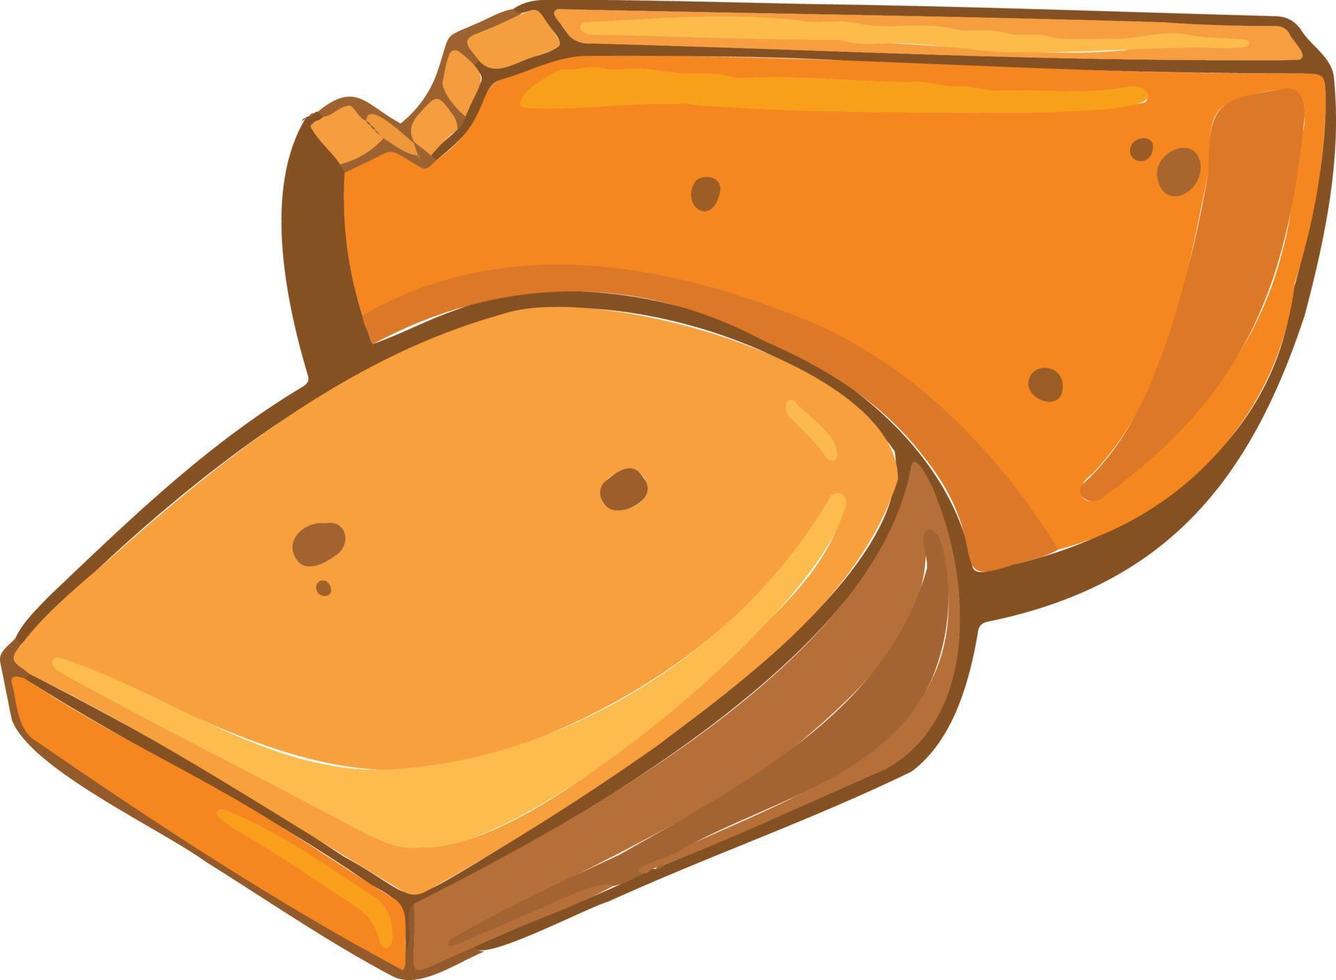 köstliches Käsesymbol im Cartoon-Stil. für Speisekarten und Websites von Restaurants. Vektor-Illustration vektor